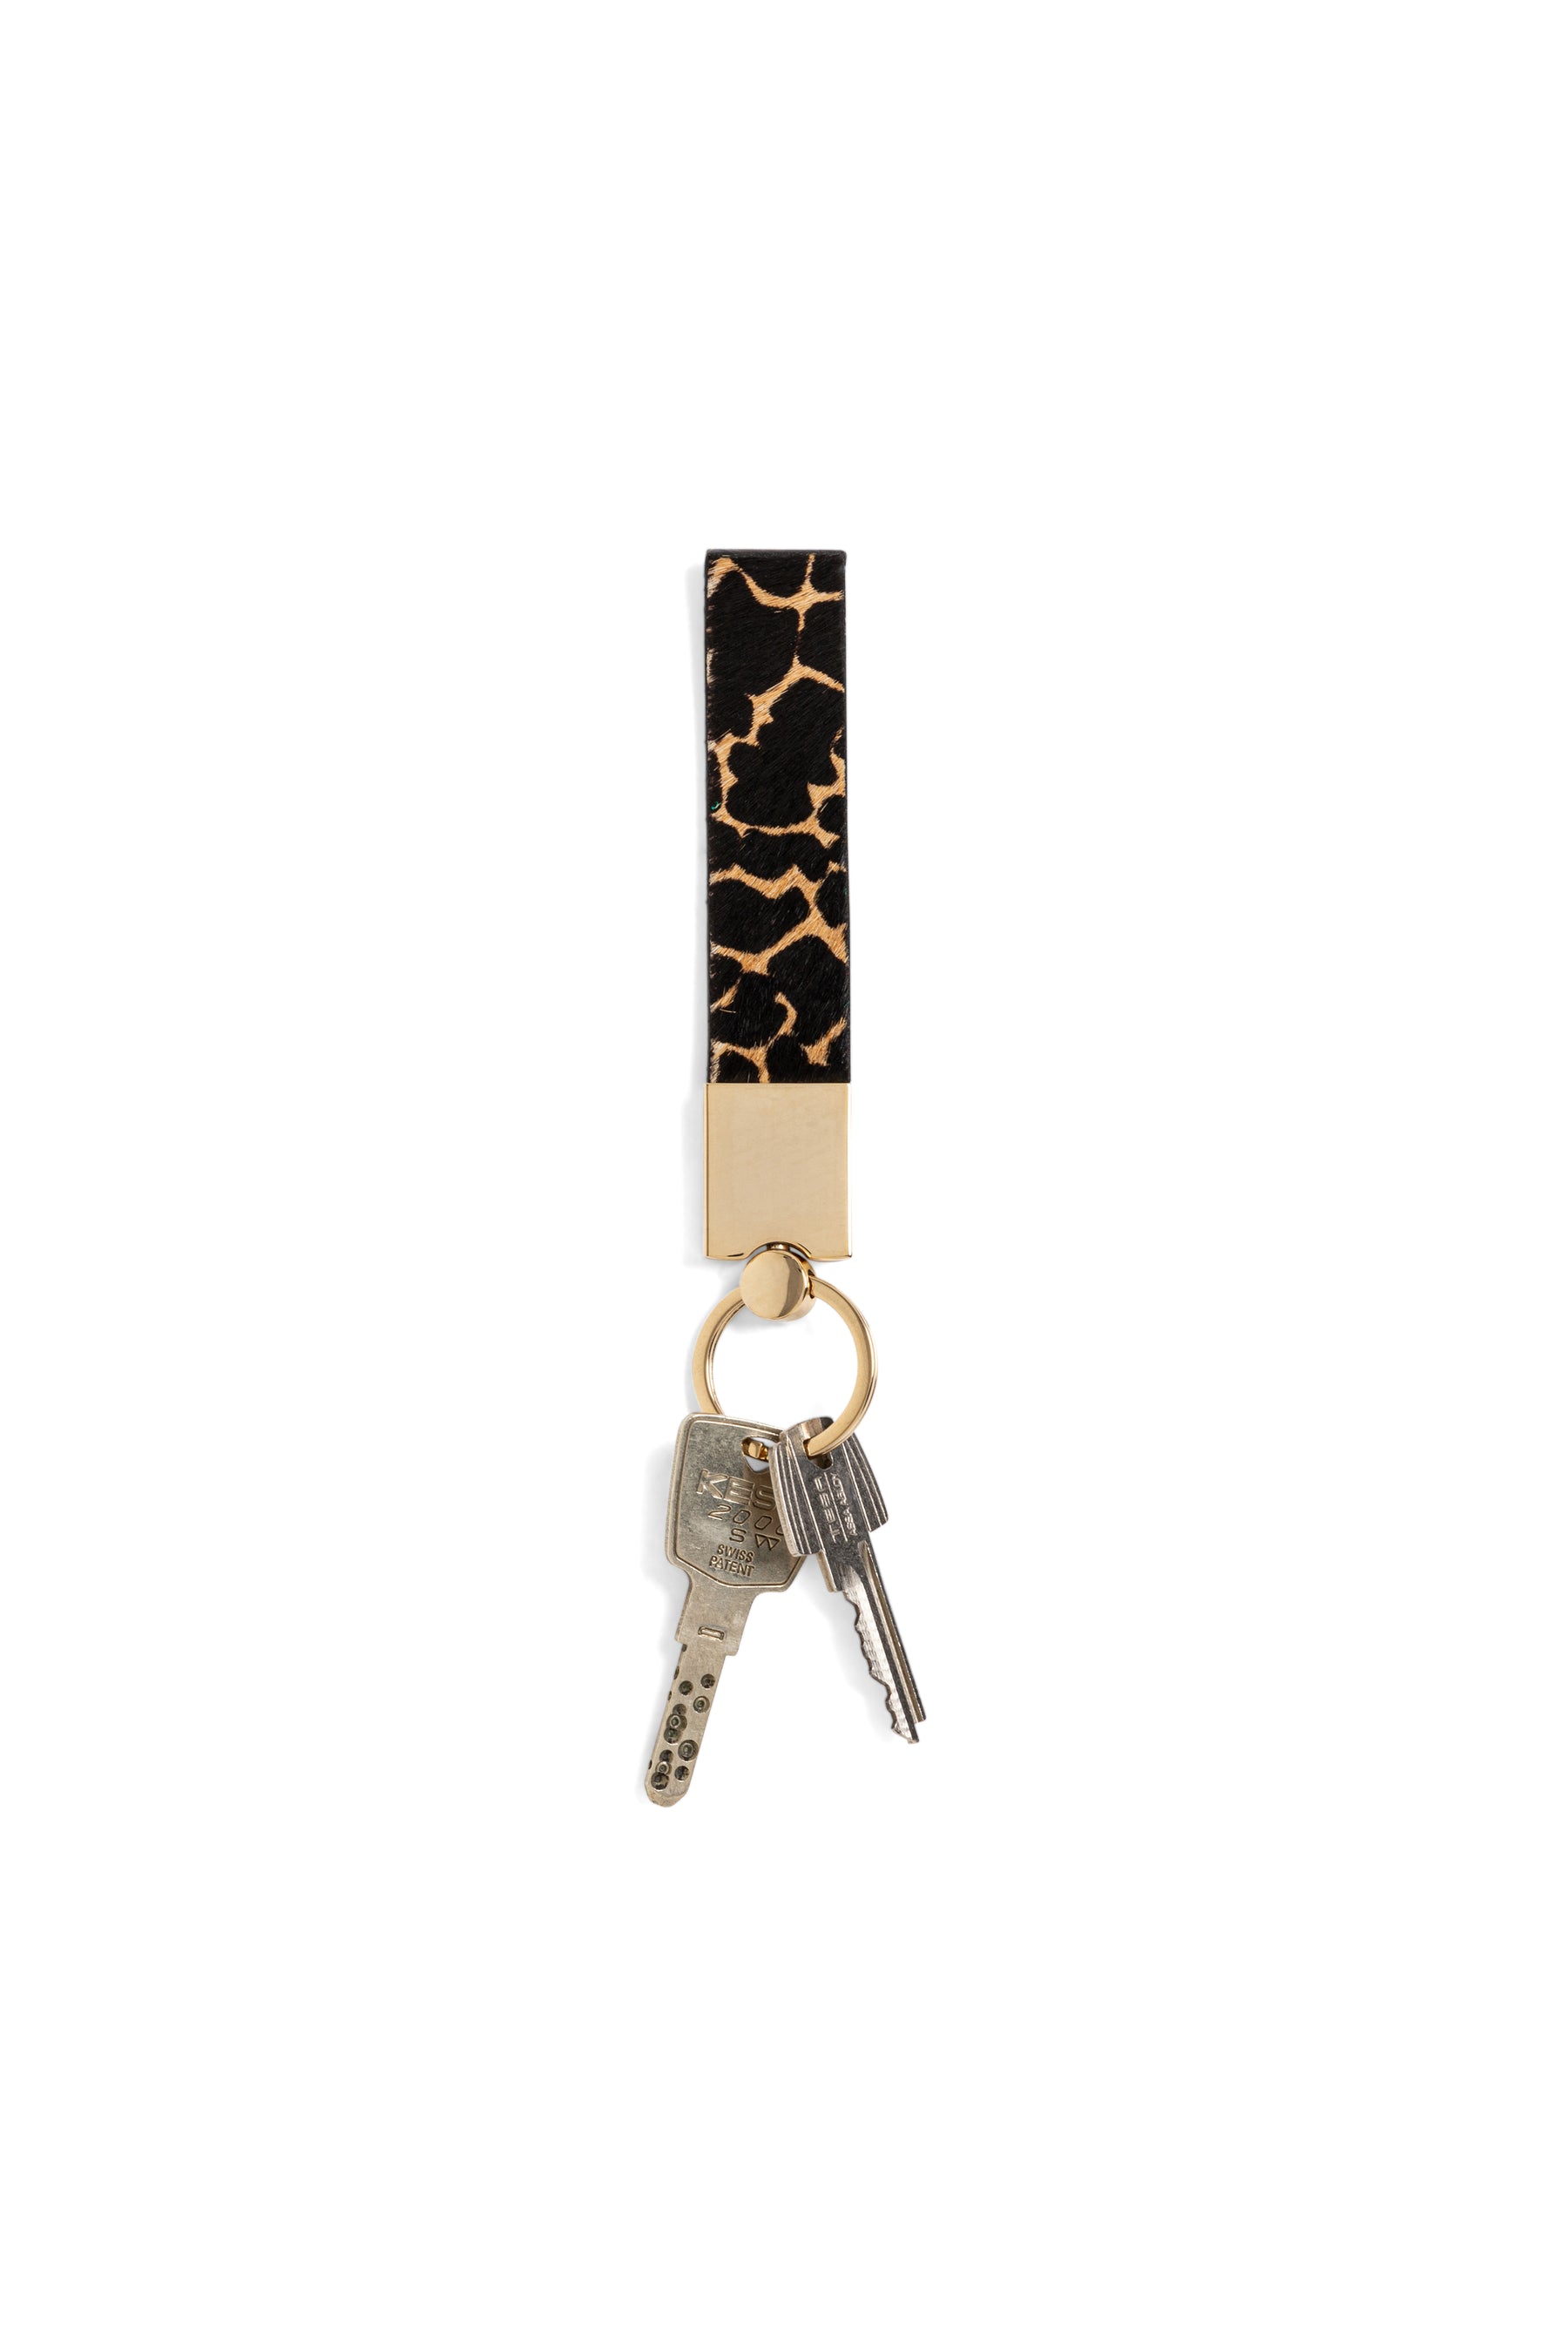 Les Minis - Porte-clé Tirette en cuir imprimé giraffe